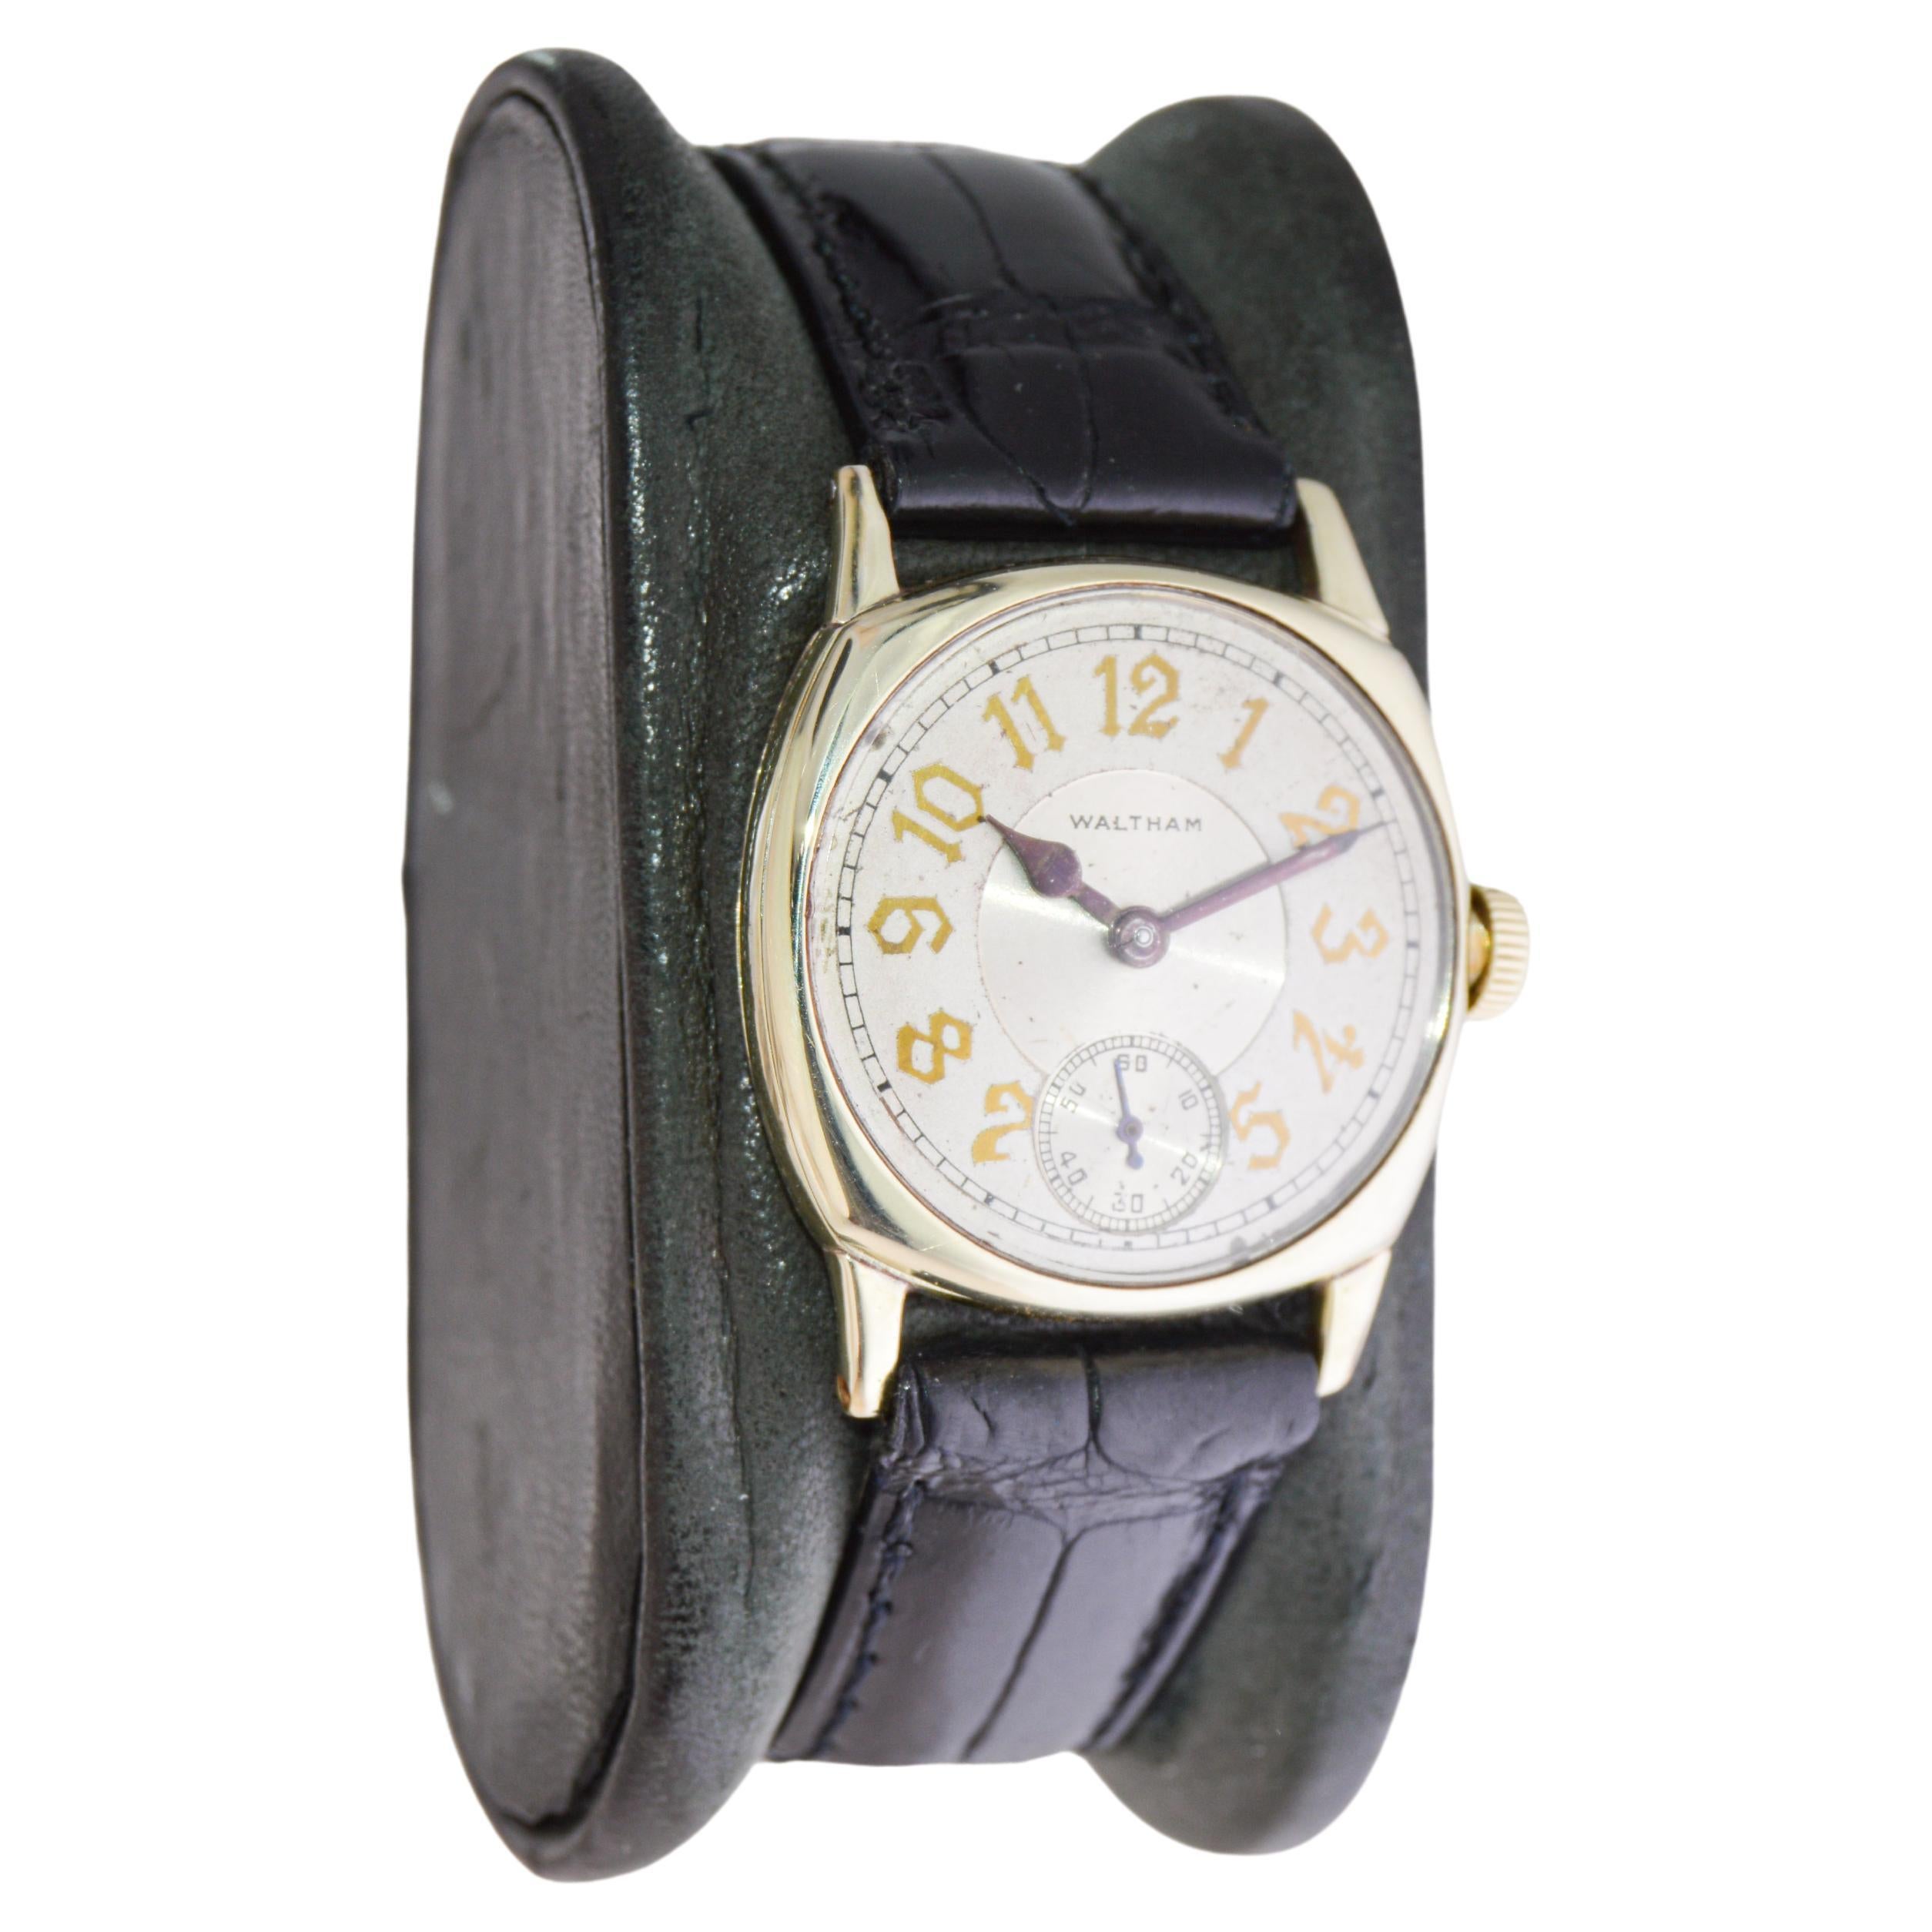 FABRIK / HAUS: Waltham Watch Company
STIL / REFERENZ: Rubin / Kissen Form
METALL / MATERIAL: Gelbgold-Füllung
CIRCA / JAHR: 1926
ABMESSUNGEN / GRÖSSE: Länge 34mm X Breite 28mm
UHRWERK / KALIBER: Handaufzug / 17 Jewels / Kaliber Ruby 6/0 
ZIFFERBLATT